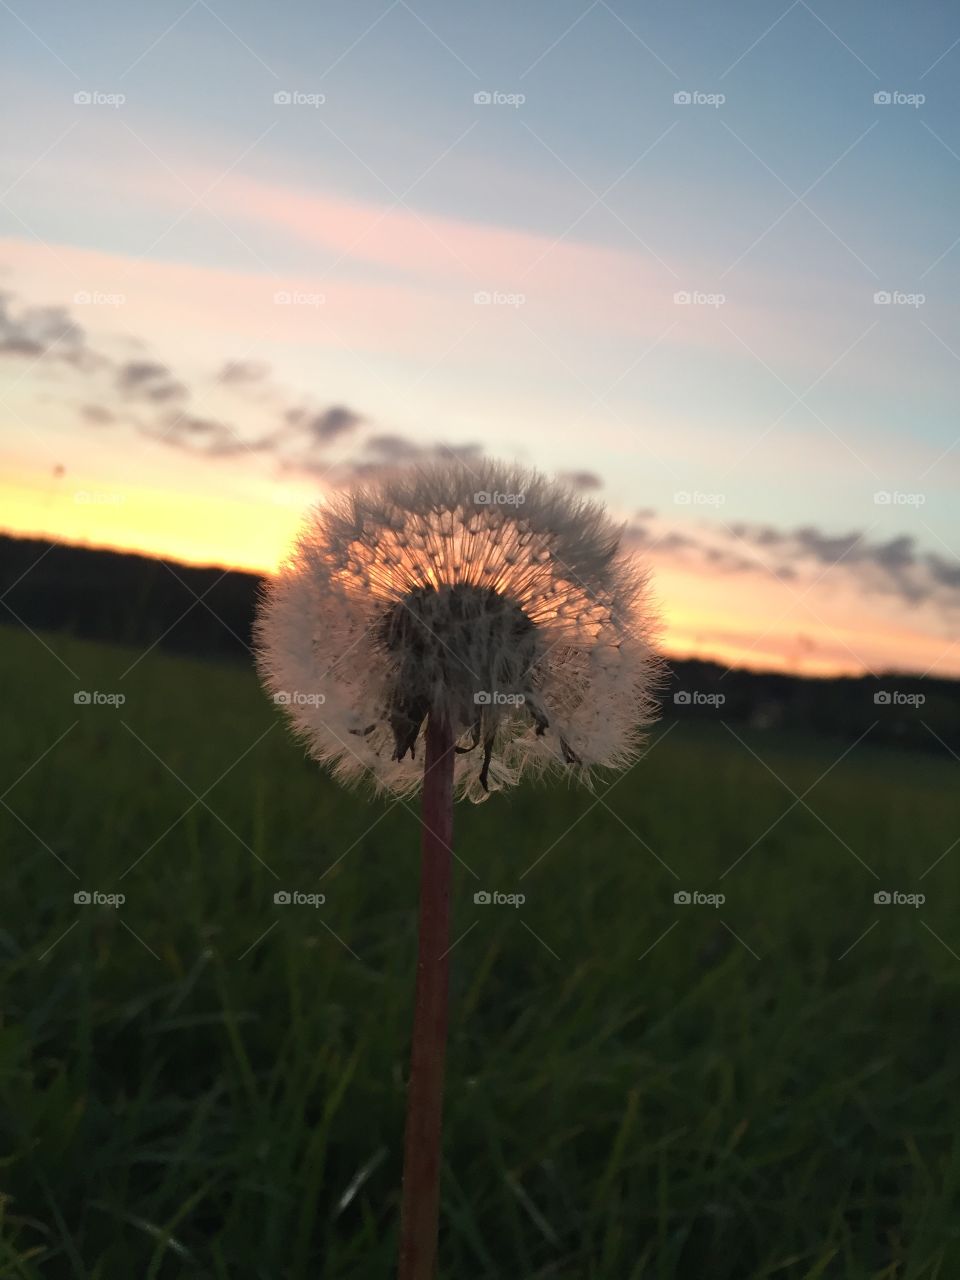 Flower in sunset